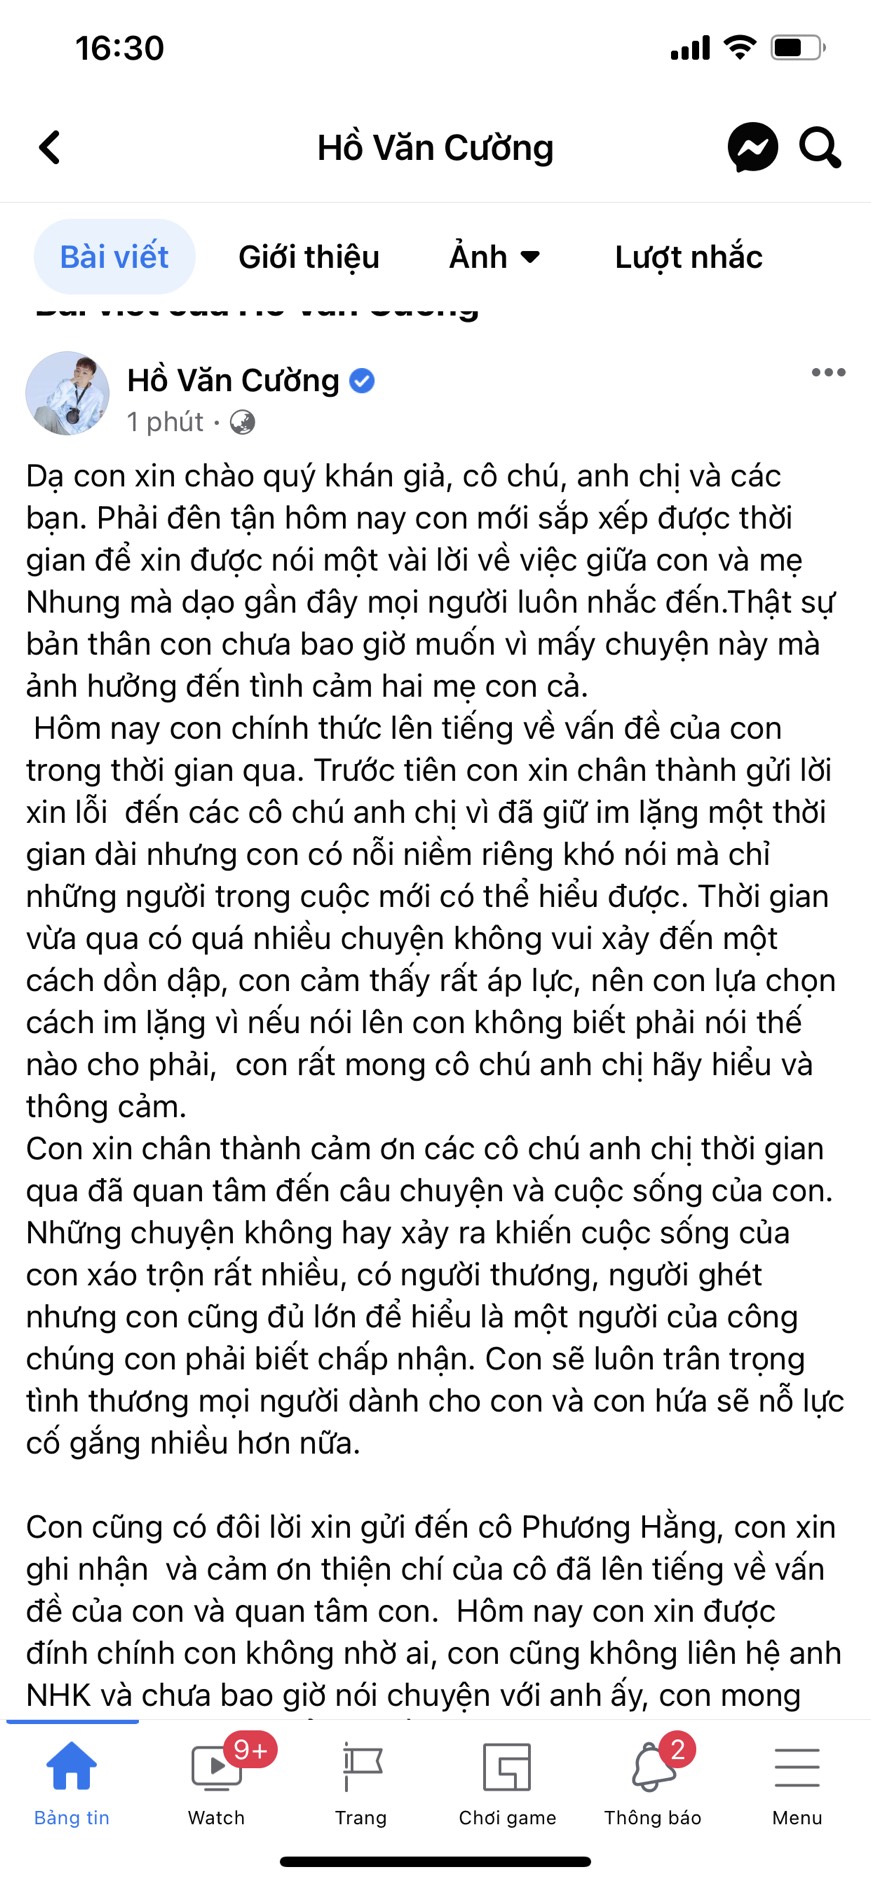 Bài viết của Hồ Văn Cường được đăng tải sau khi phía ca sĩ Phi Nhung thông báo đã trao lại tiền cho nam ca sĩ